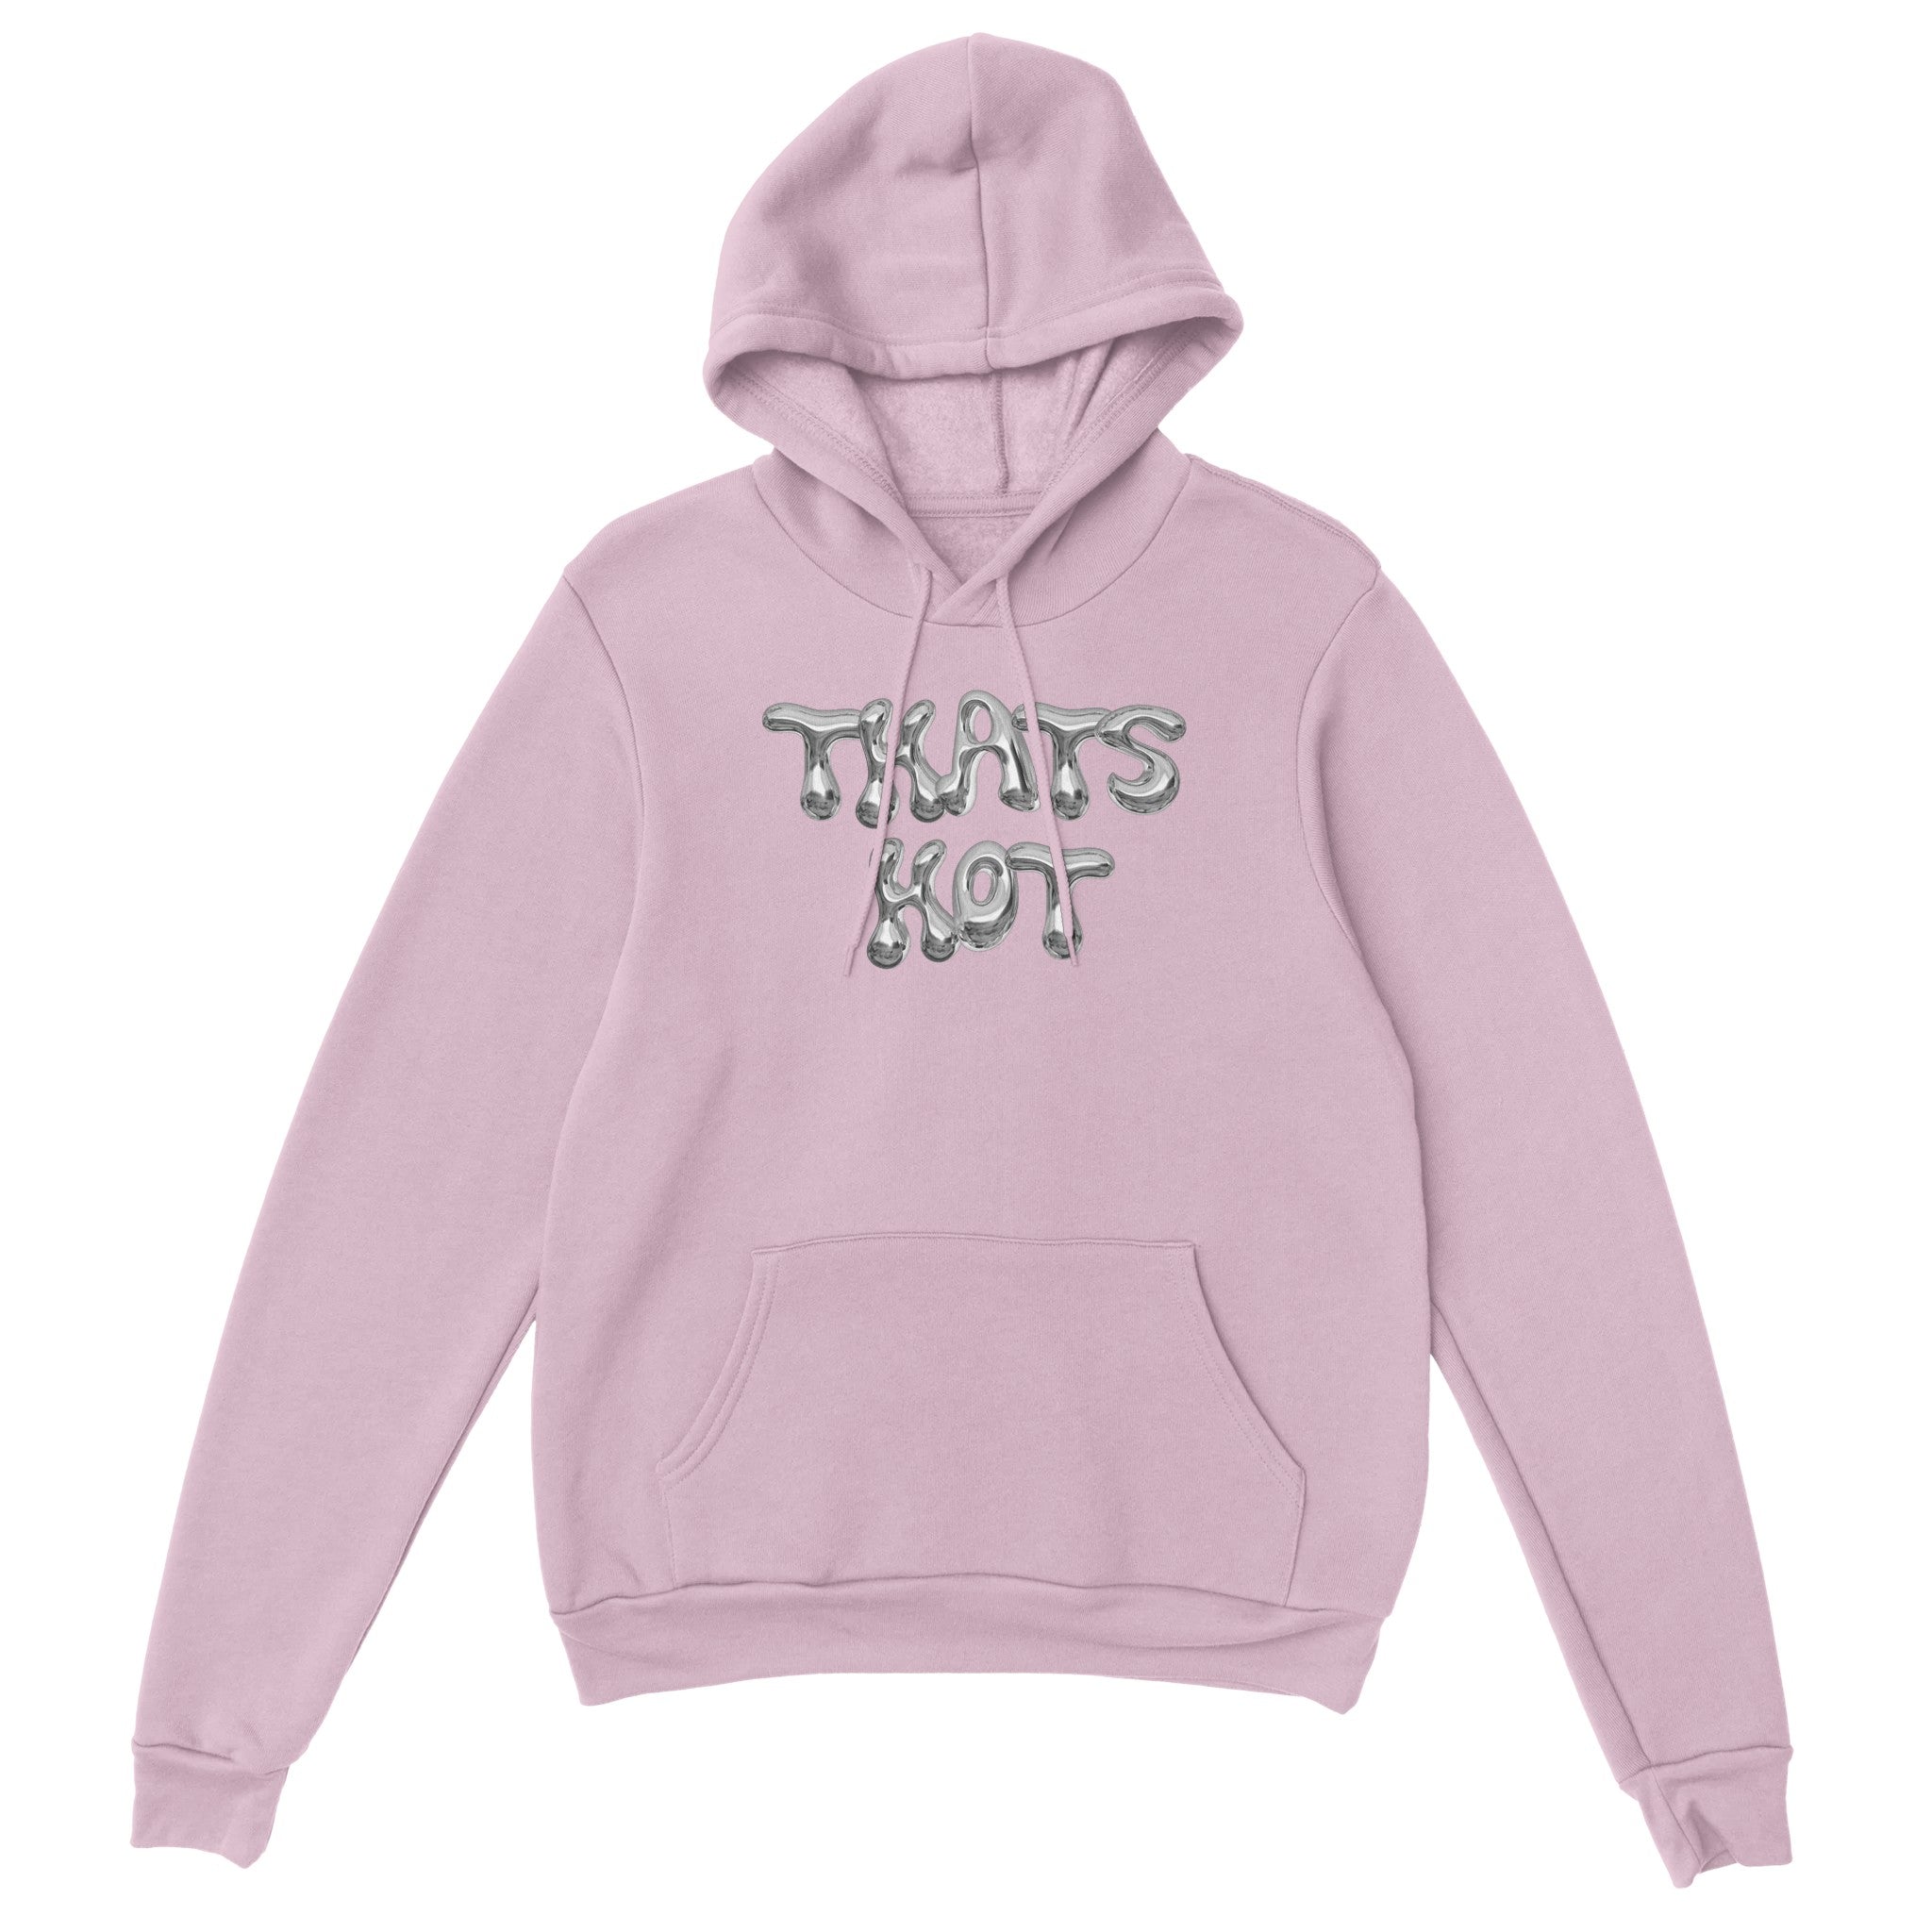 'Thats Hot' hoodie - In Print We Trust